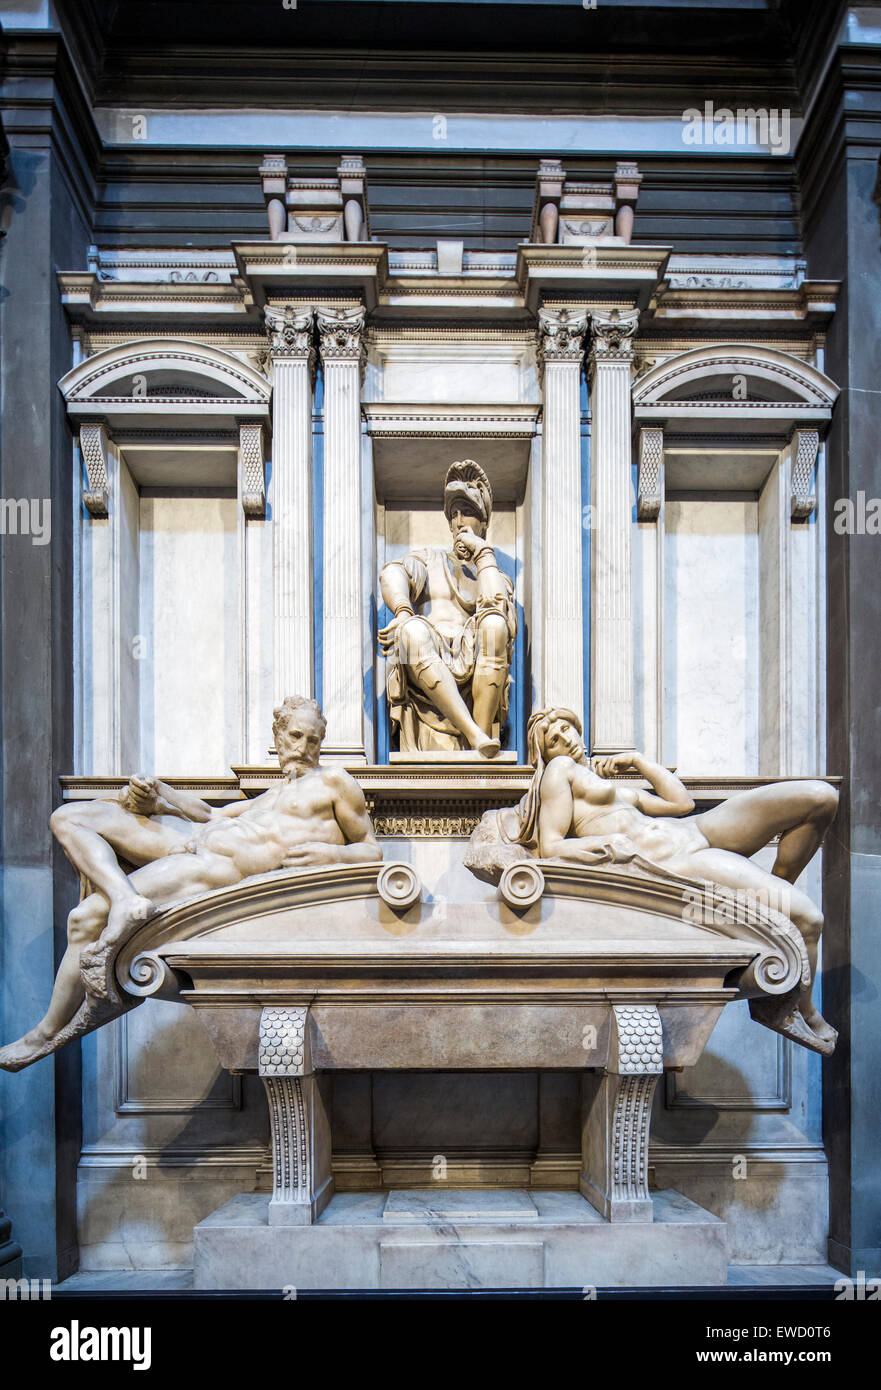 Tombe de Piero di Lorenzo de' Medici, sculpture de Michel-Ange, nouvelle sacristie, basilique San Lorenzo, Florence, Italie. Banque D'Images